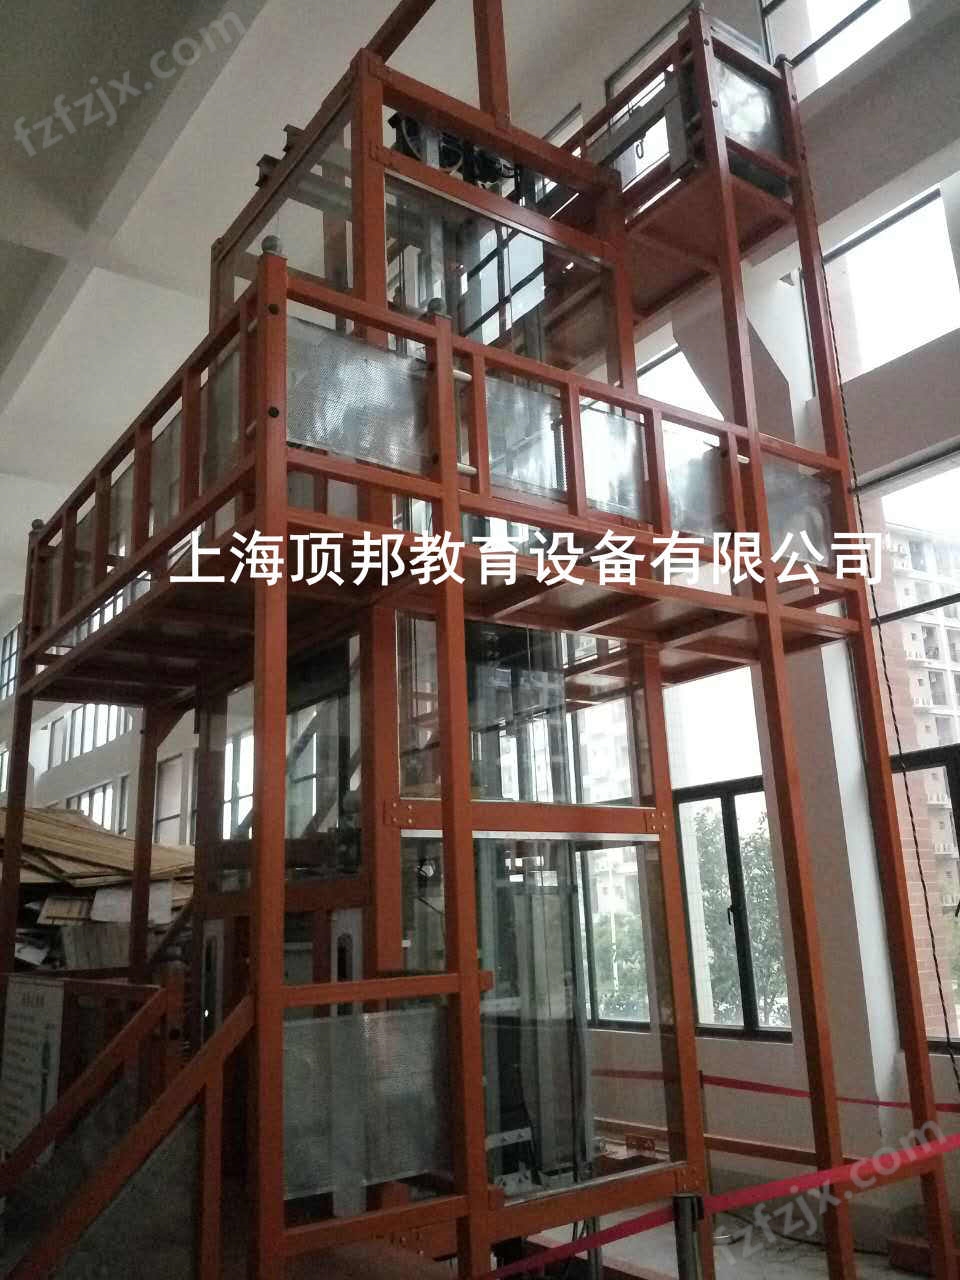 电梯安装维修与保养实训考核装置